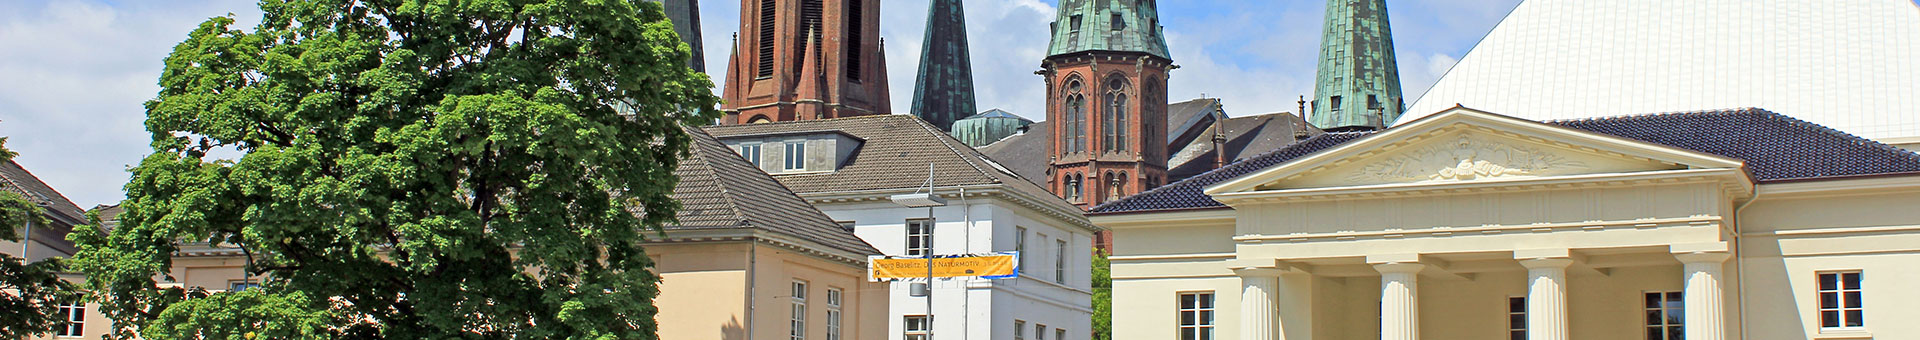 Oldenburg: Gerichtsviertel